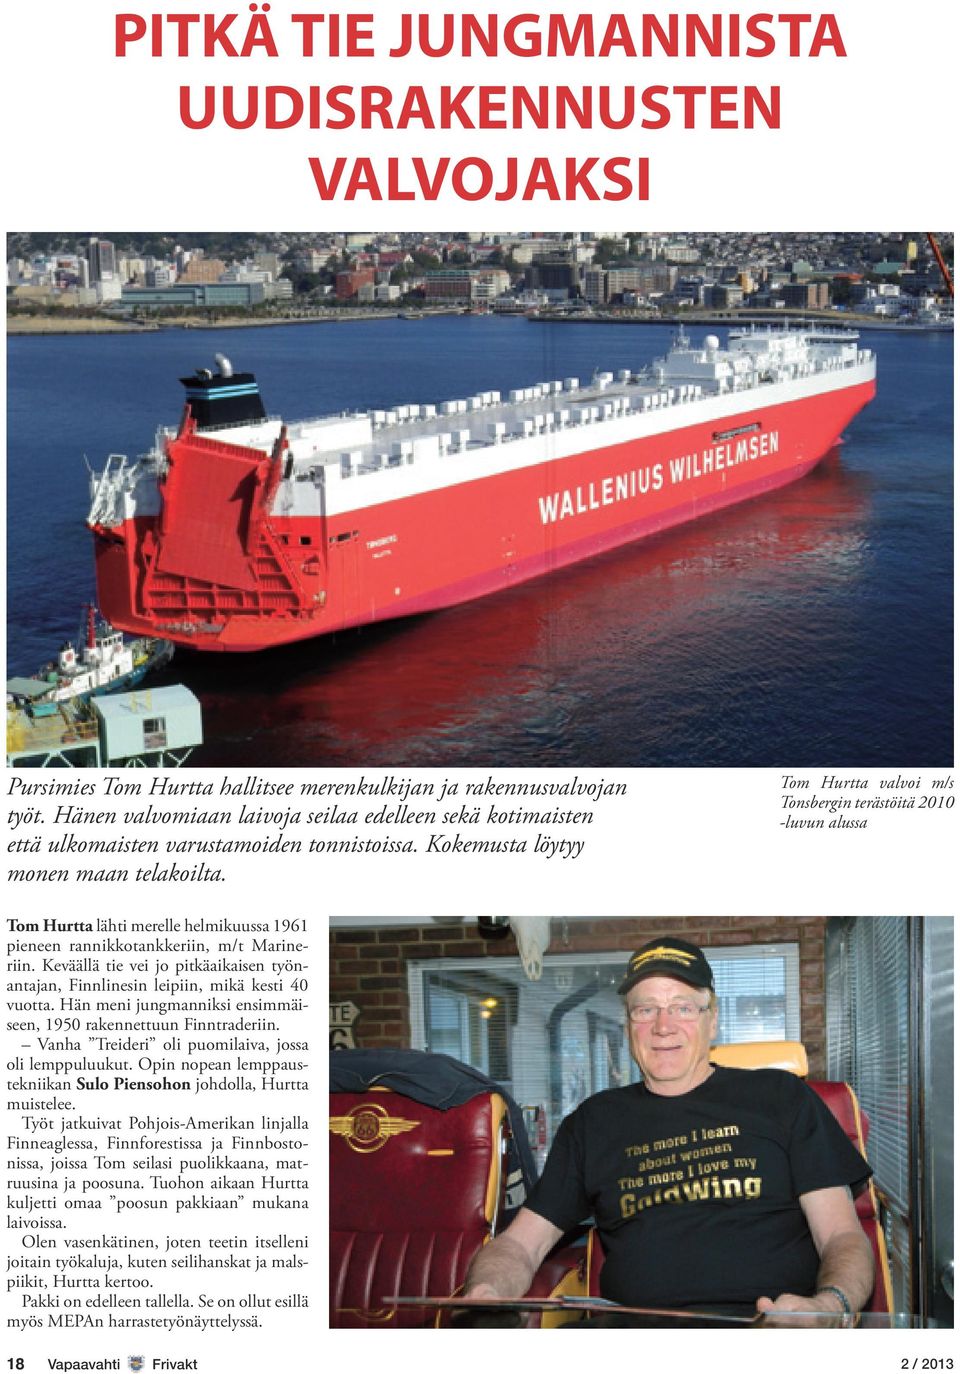 Tom Hurtta valvoi m/s Tonsbergin terästöitä 2010 -luvun alussa Tom Hurtta lähti merelle helmikuussa 1961 pieneen rannikkotankkeriin, m/t Marineriin.